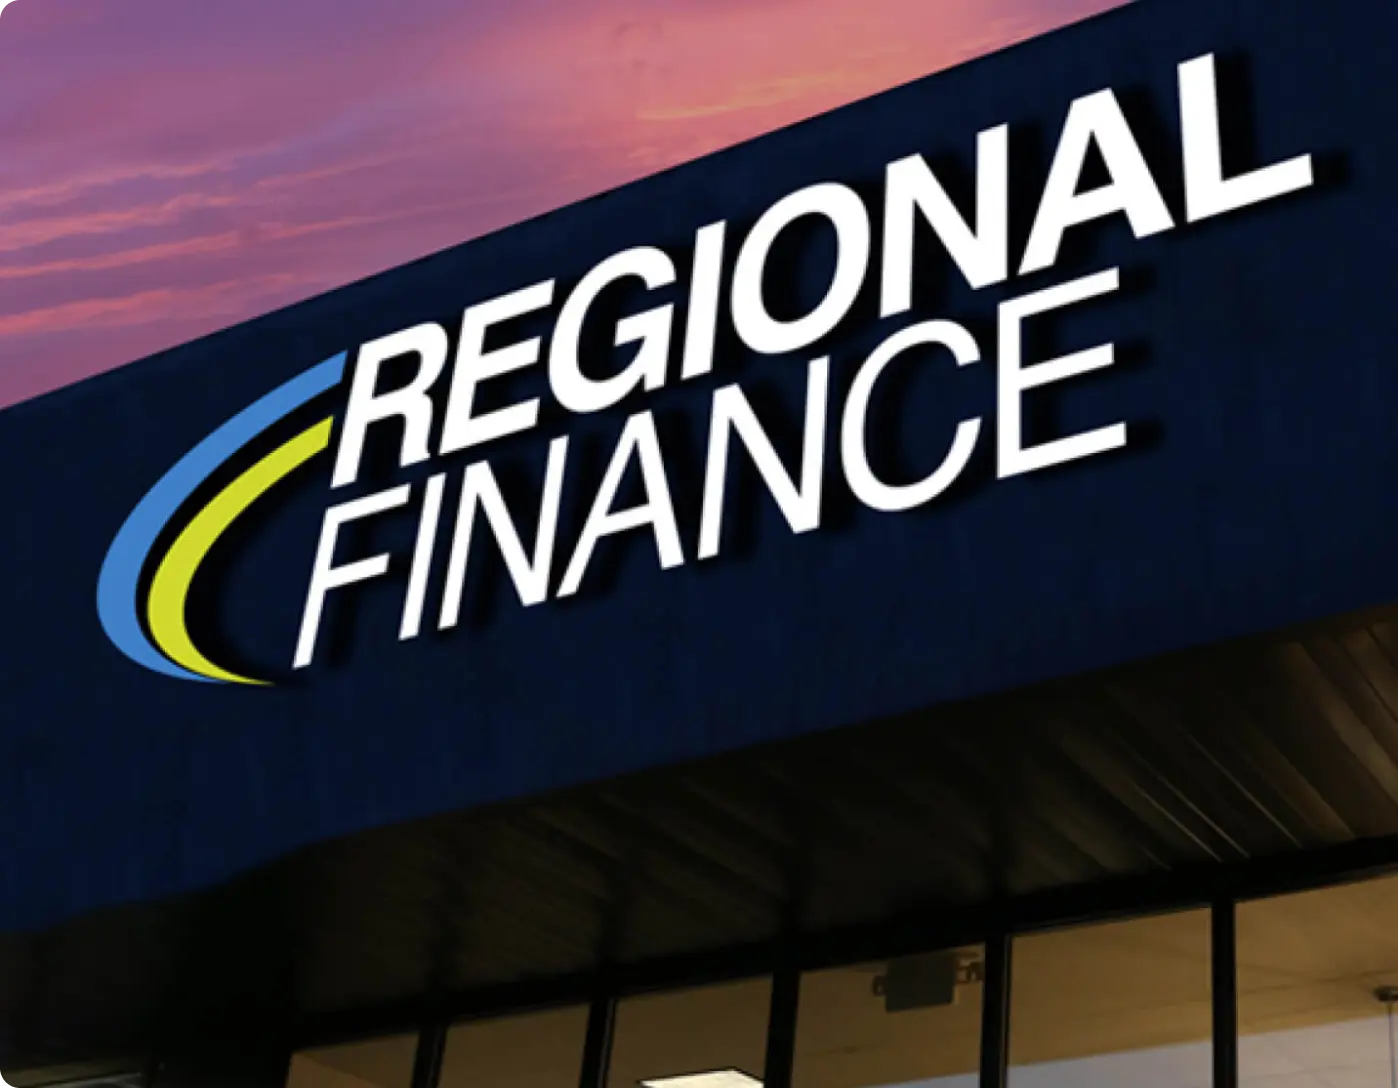 Regional Finance logo